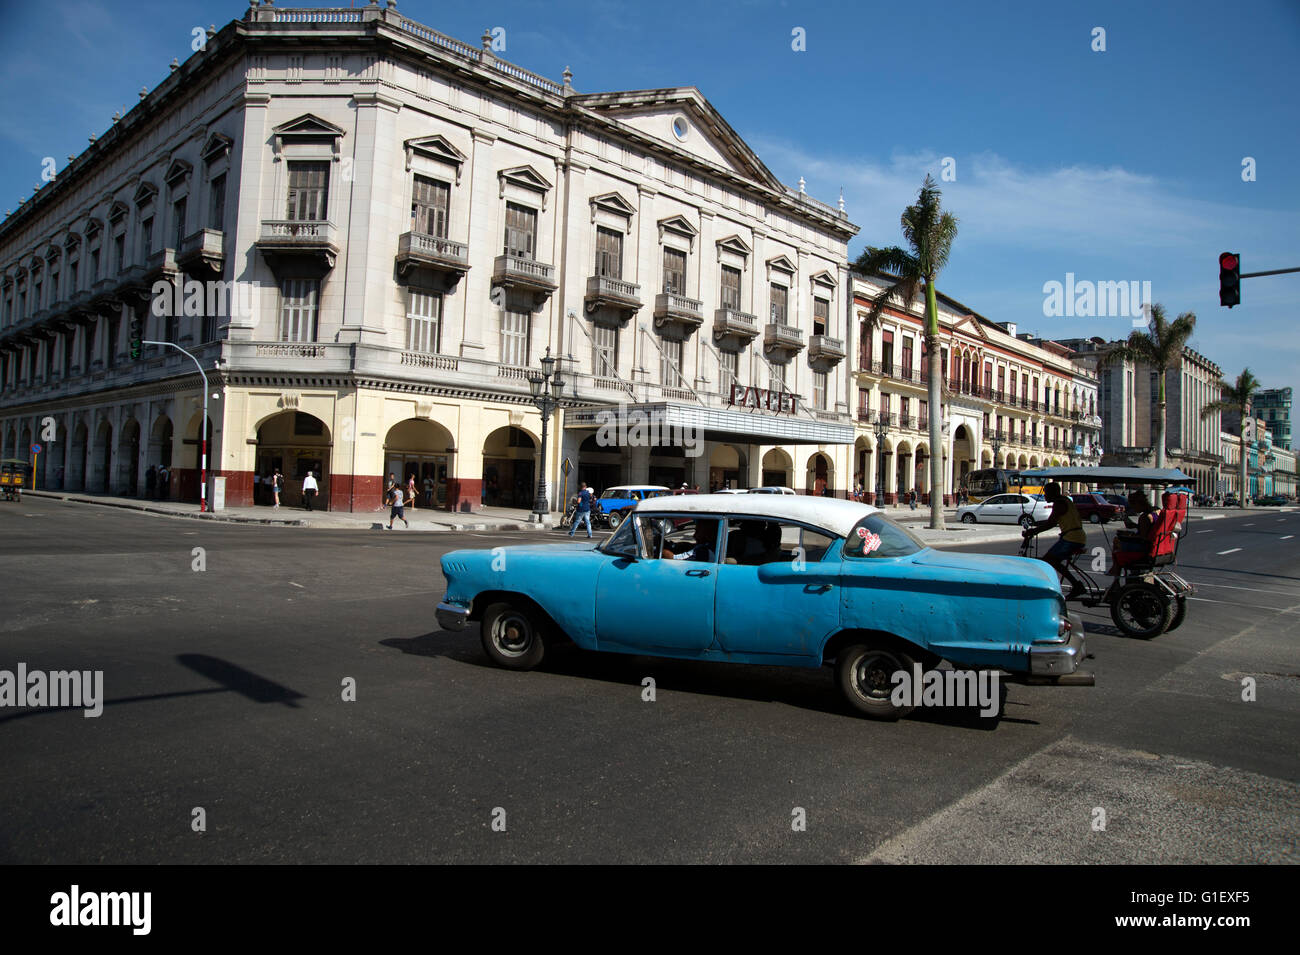 Un vecchio e restaurato 1950's American Automobile usata come un taxi la guida sulle strade del centro di Havana Cuba Foto Stock